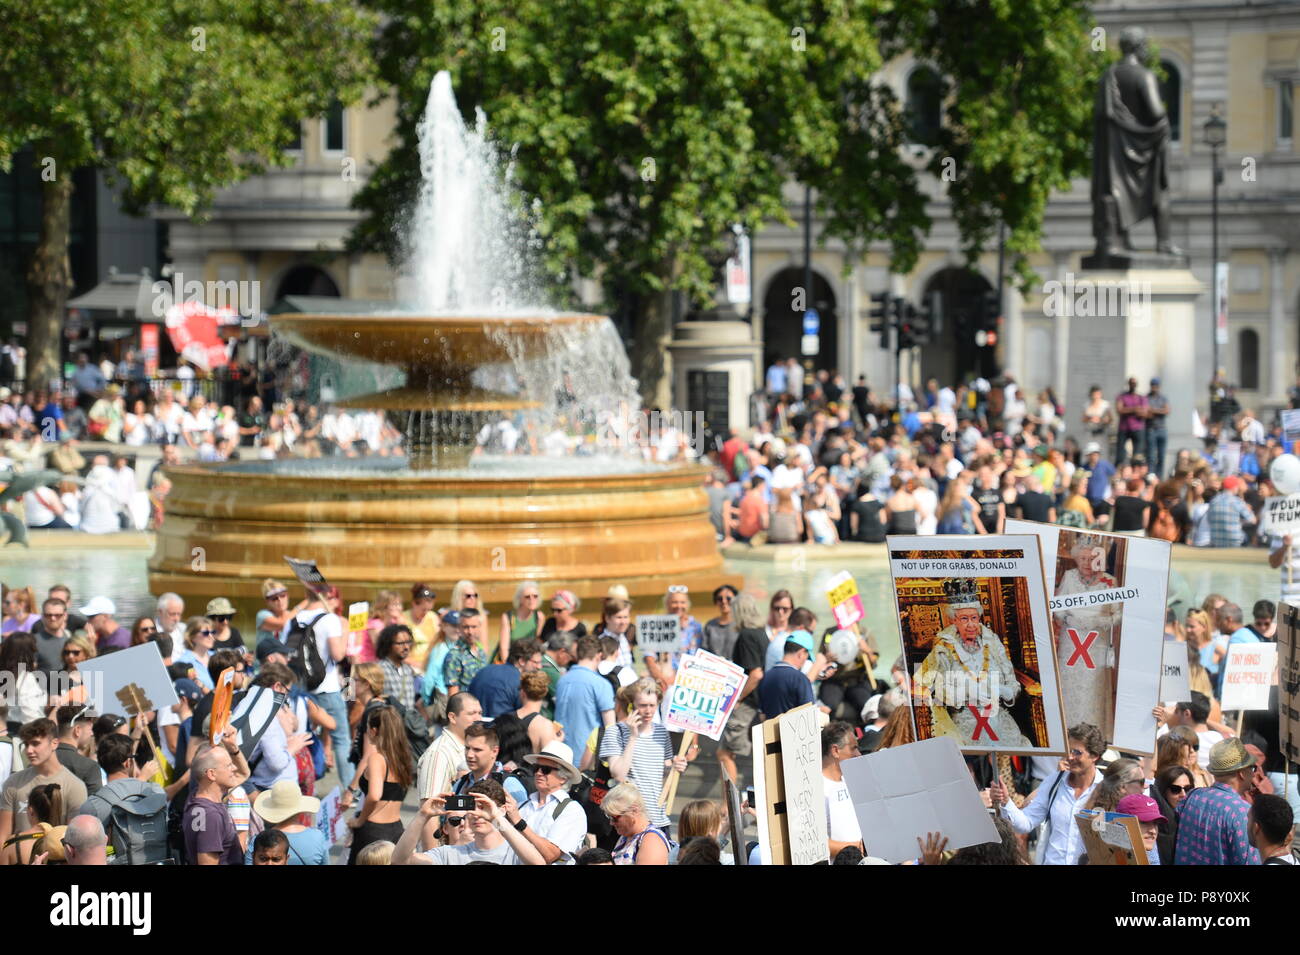 Dimostranti a Trafalgar Square, London, prendere parte a manifestazioni di protesta contro la visita del Presidente americano Donald Trump AL REGNO UNITO. Foto Stock